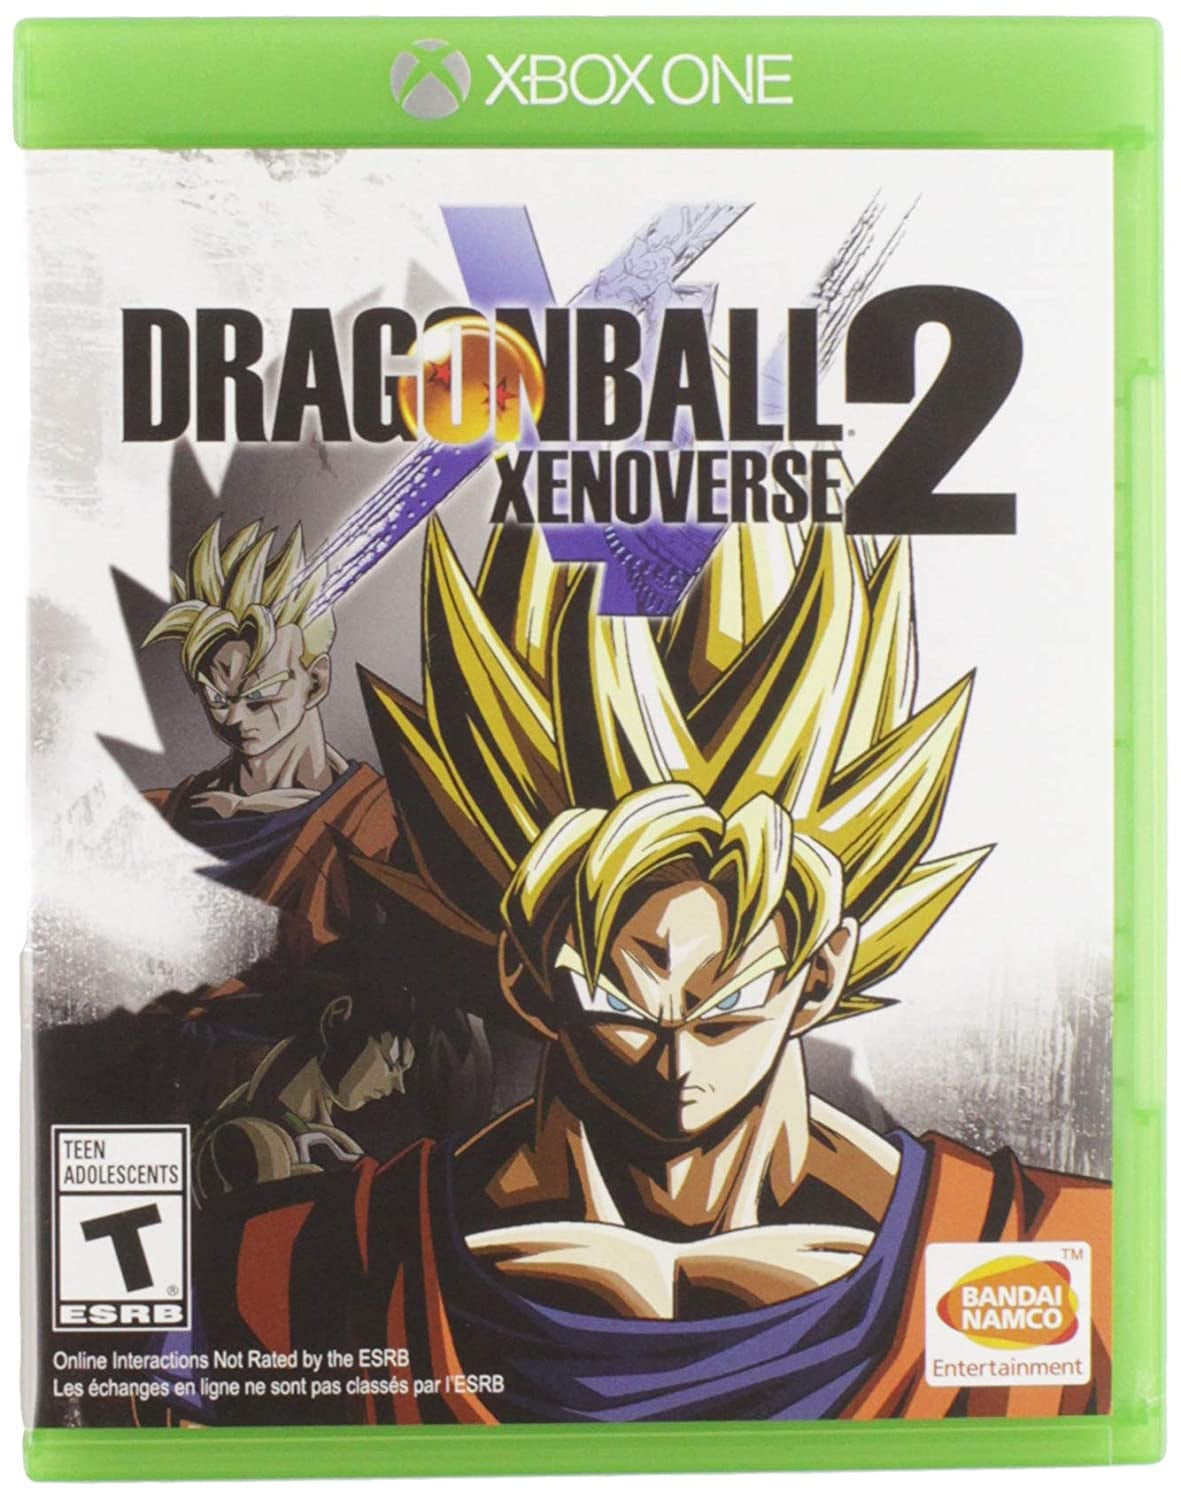 Dragon Ball Xenoverse 2 é anunciado pela Bandai, D20 Inc.